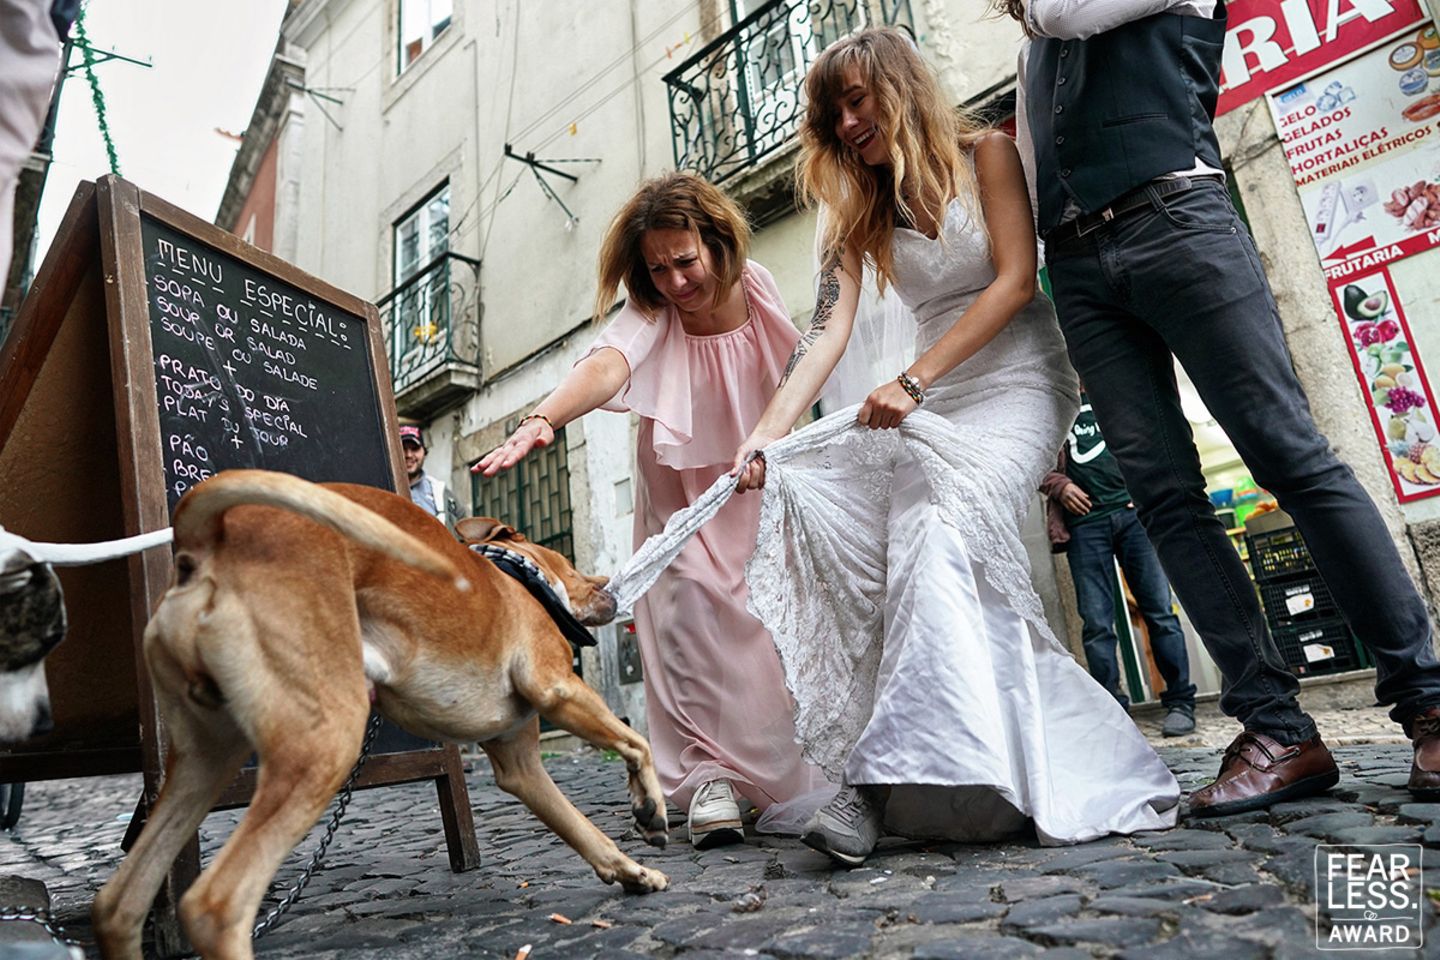 Hochzeitsfoto: Hund zerrt am Hochzeitskleid